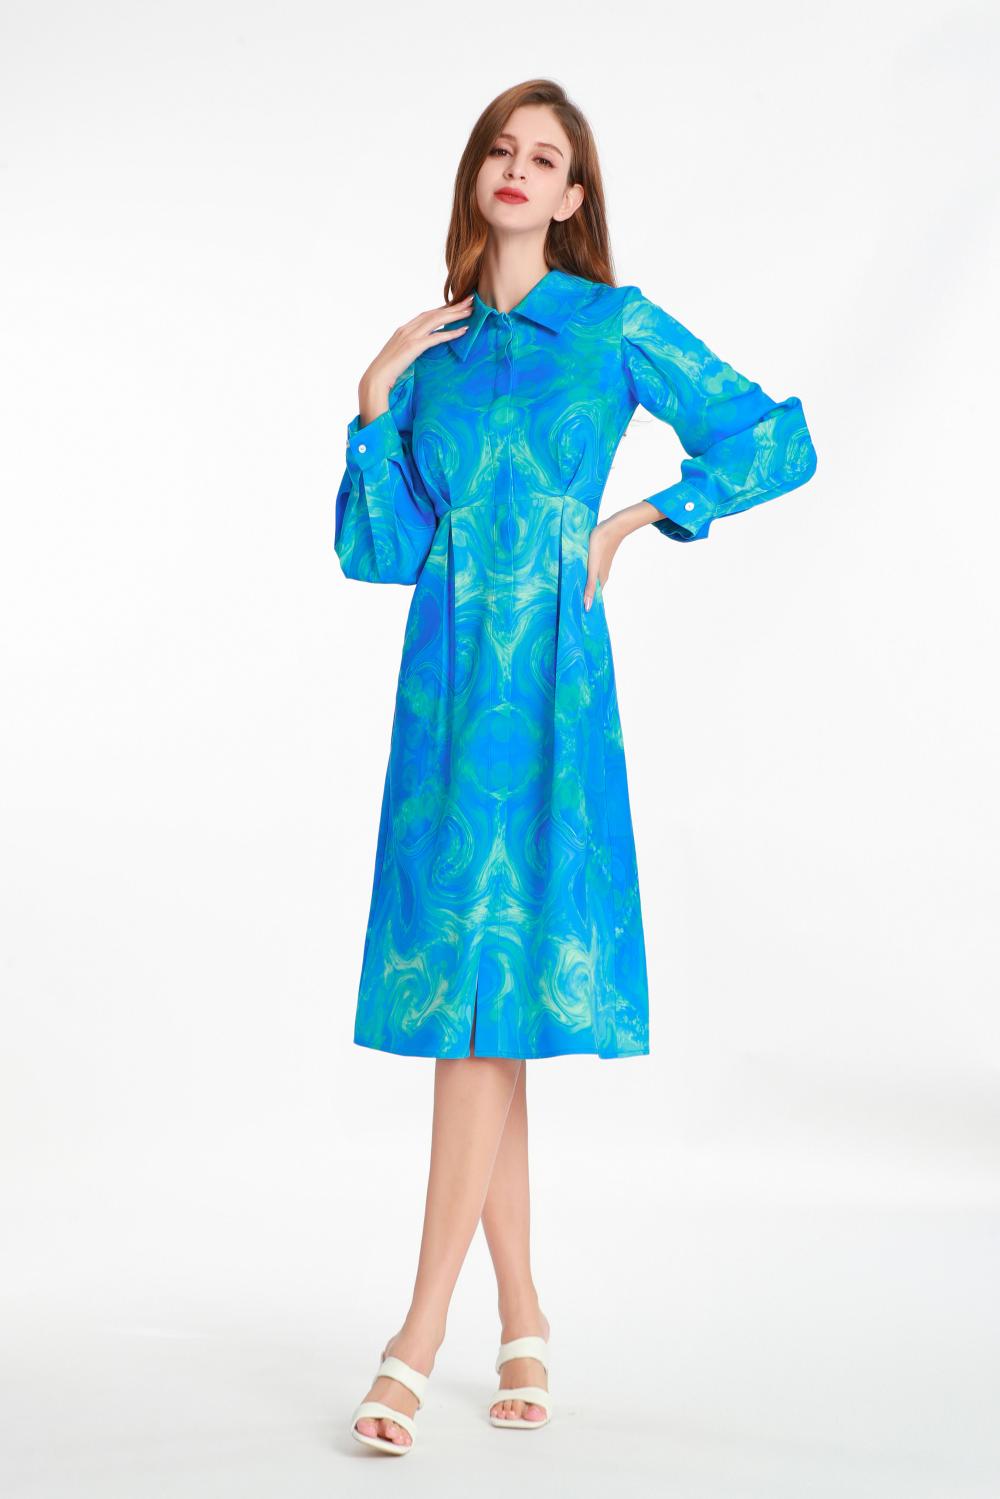 Hemdstyle-Langarm-gedrucktes Kleid